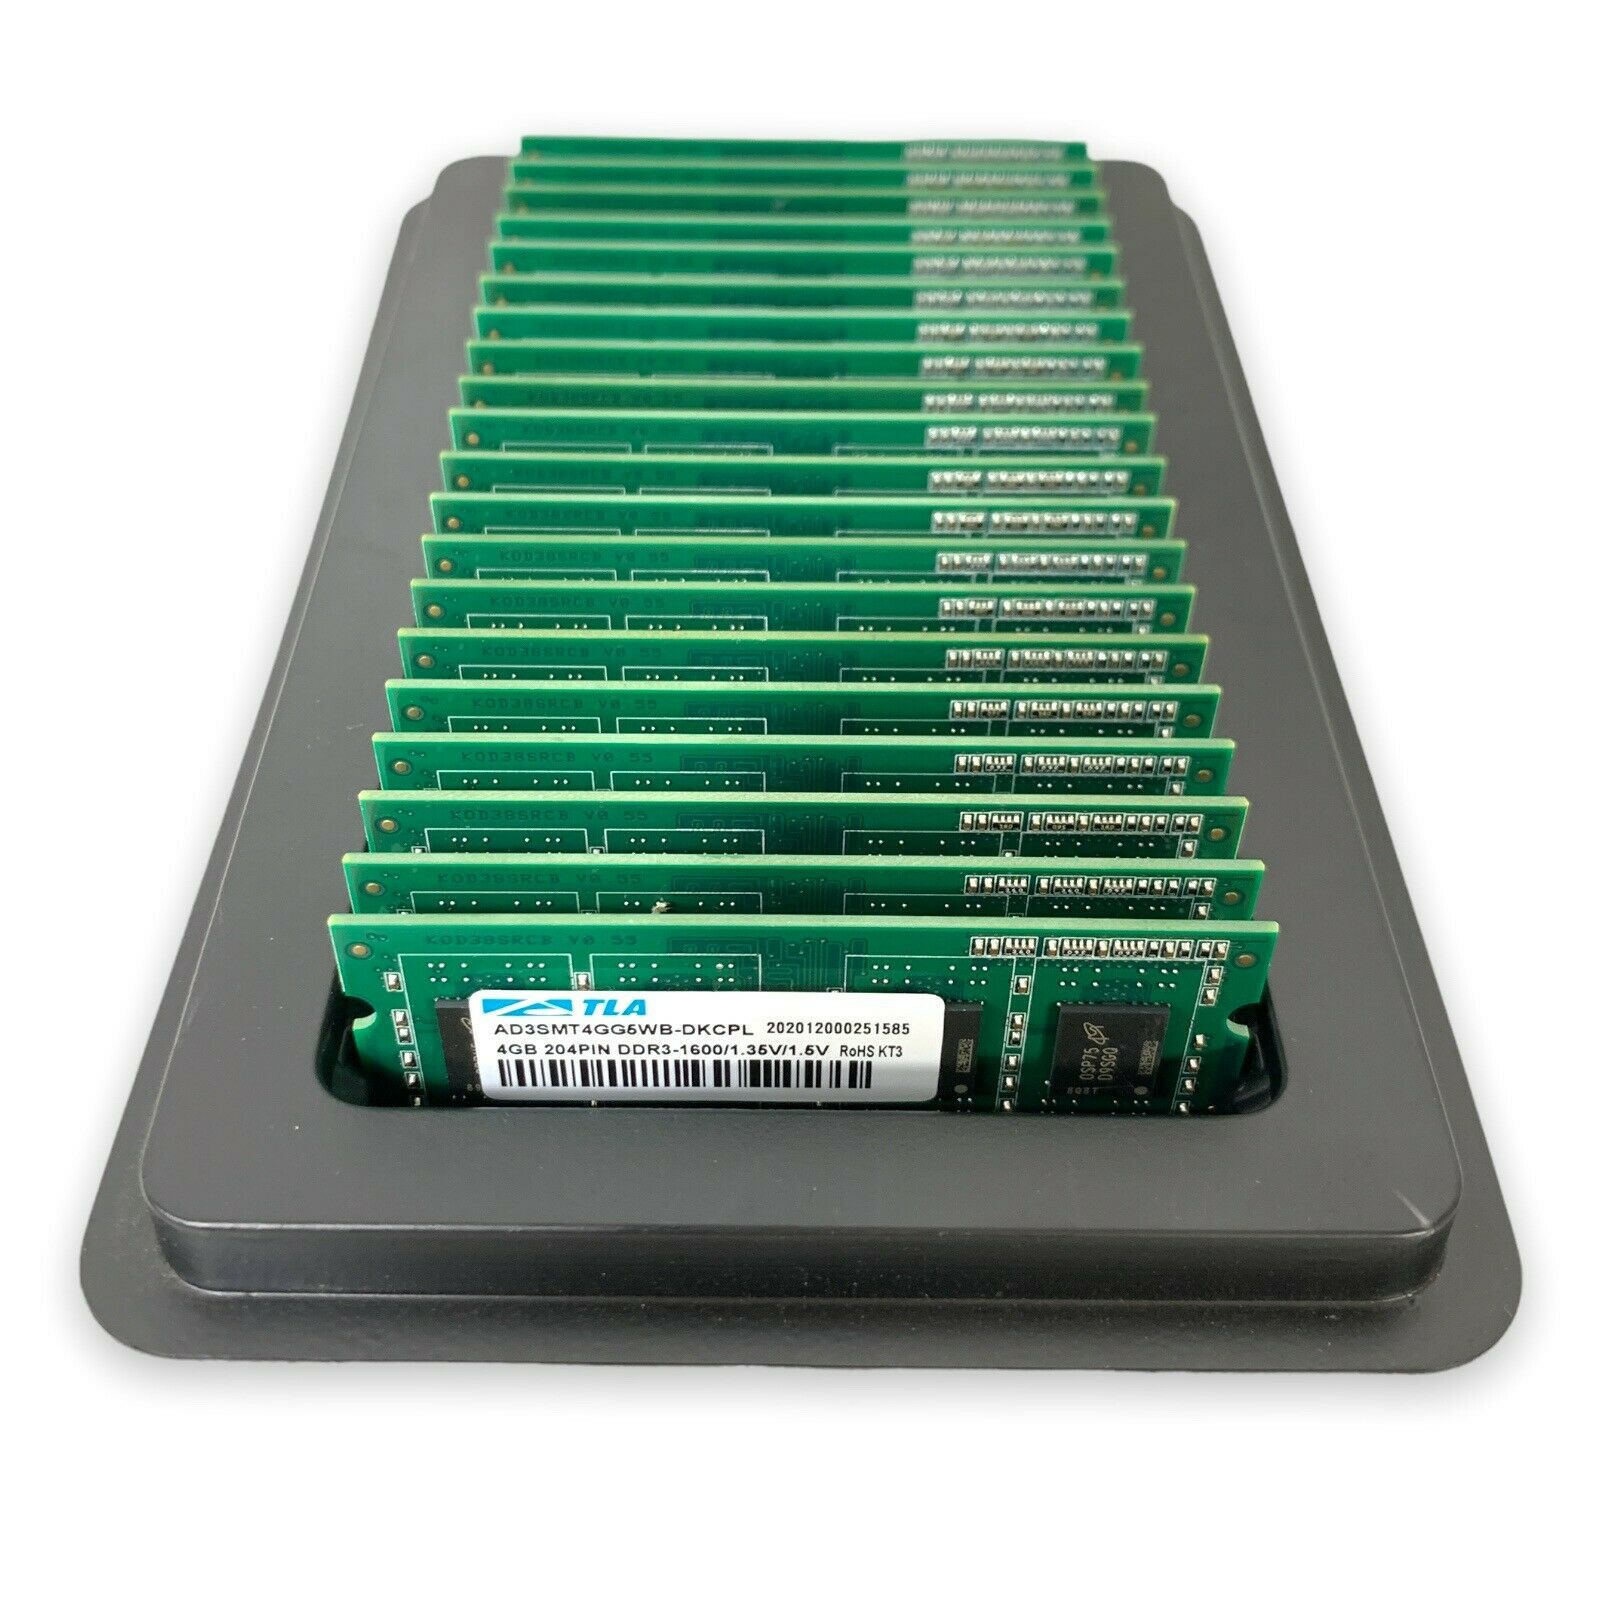 Lot Of 20 Atla AD3SMT4GG5WB DKCPL 4GB DDR3-1600 1.35V 1.5V Desktop RAM Memory